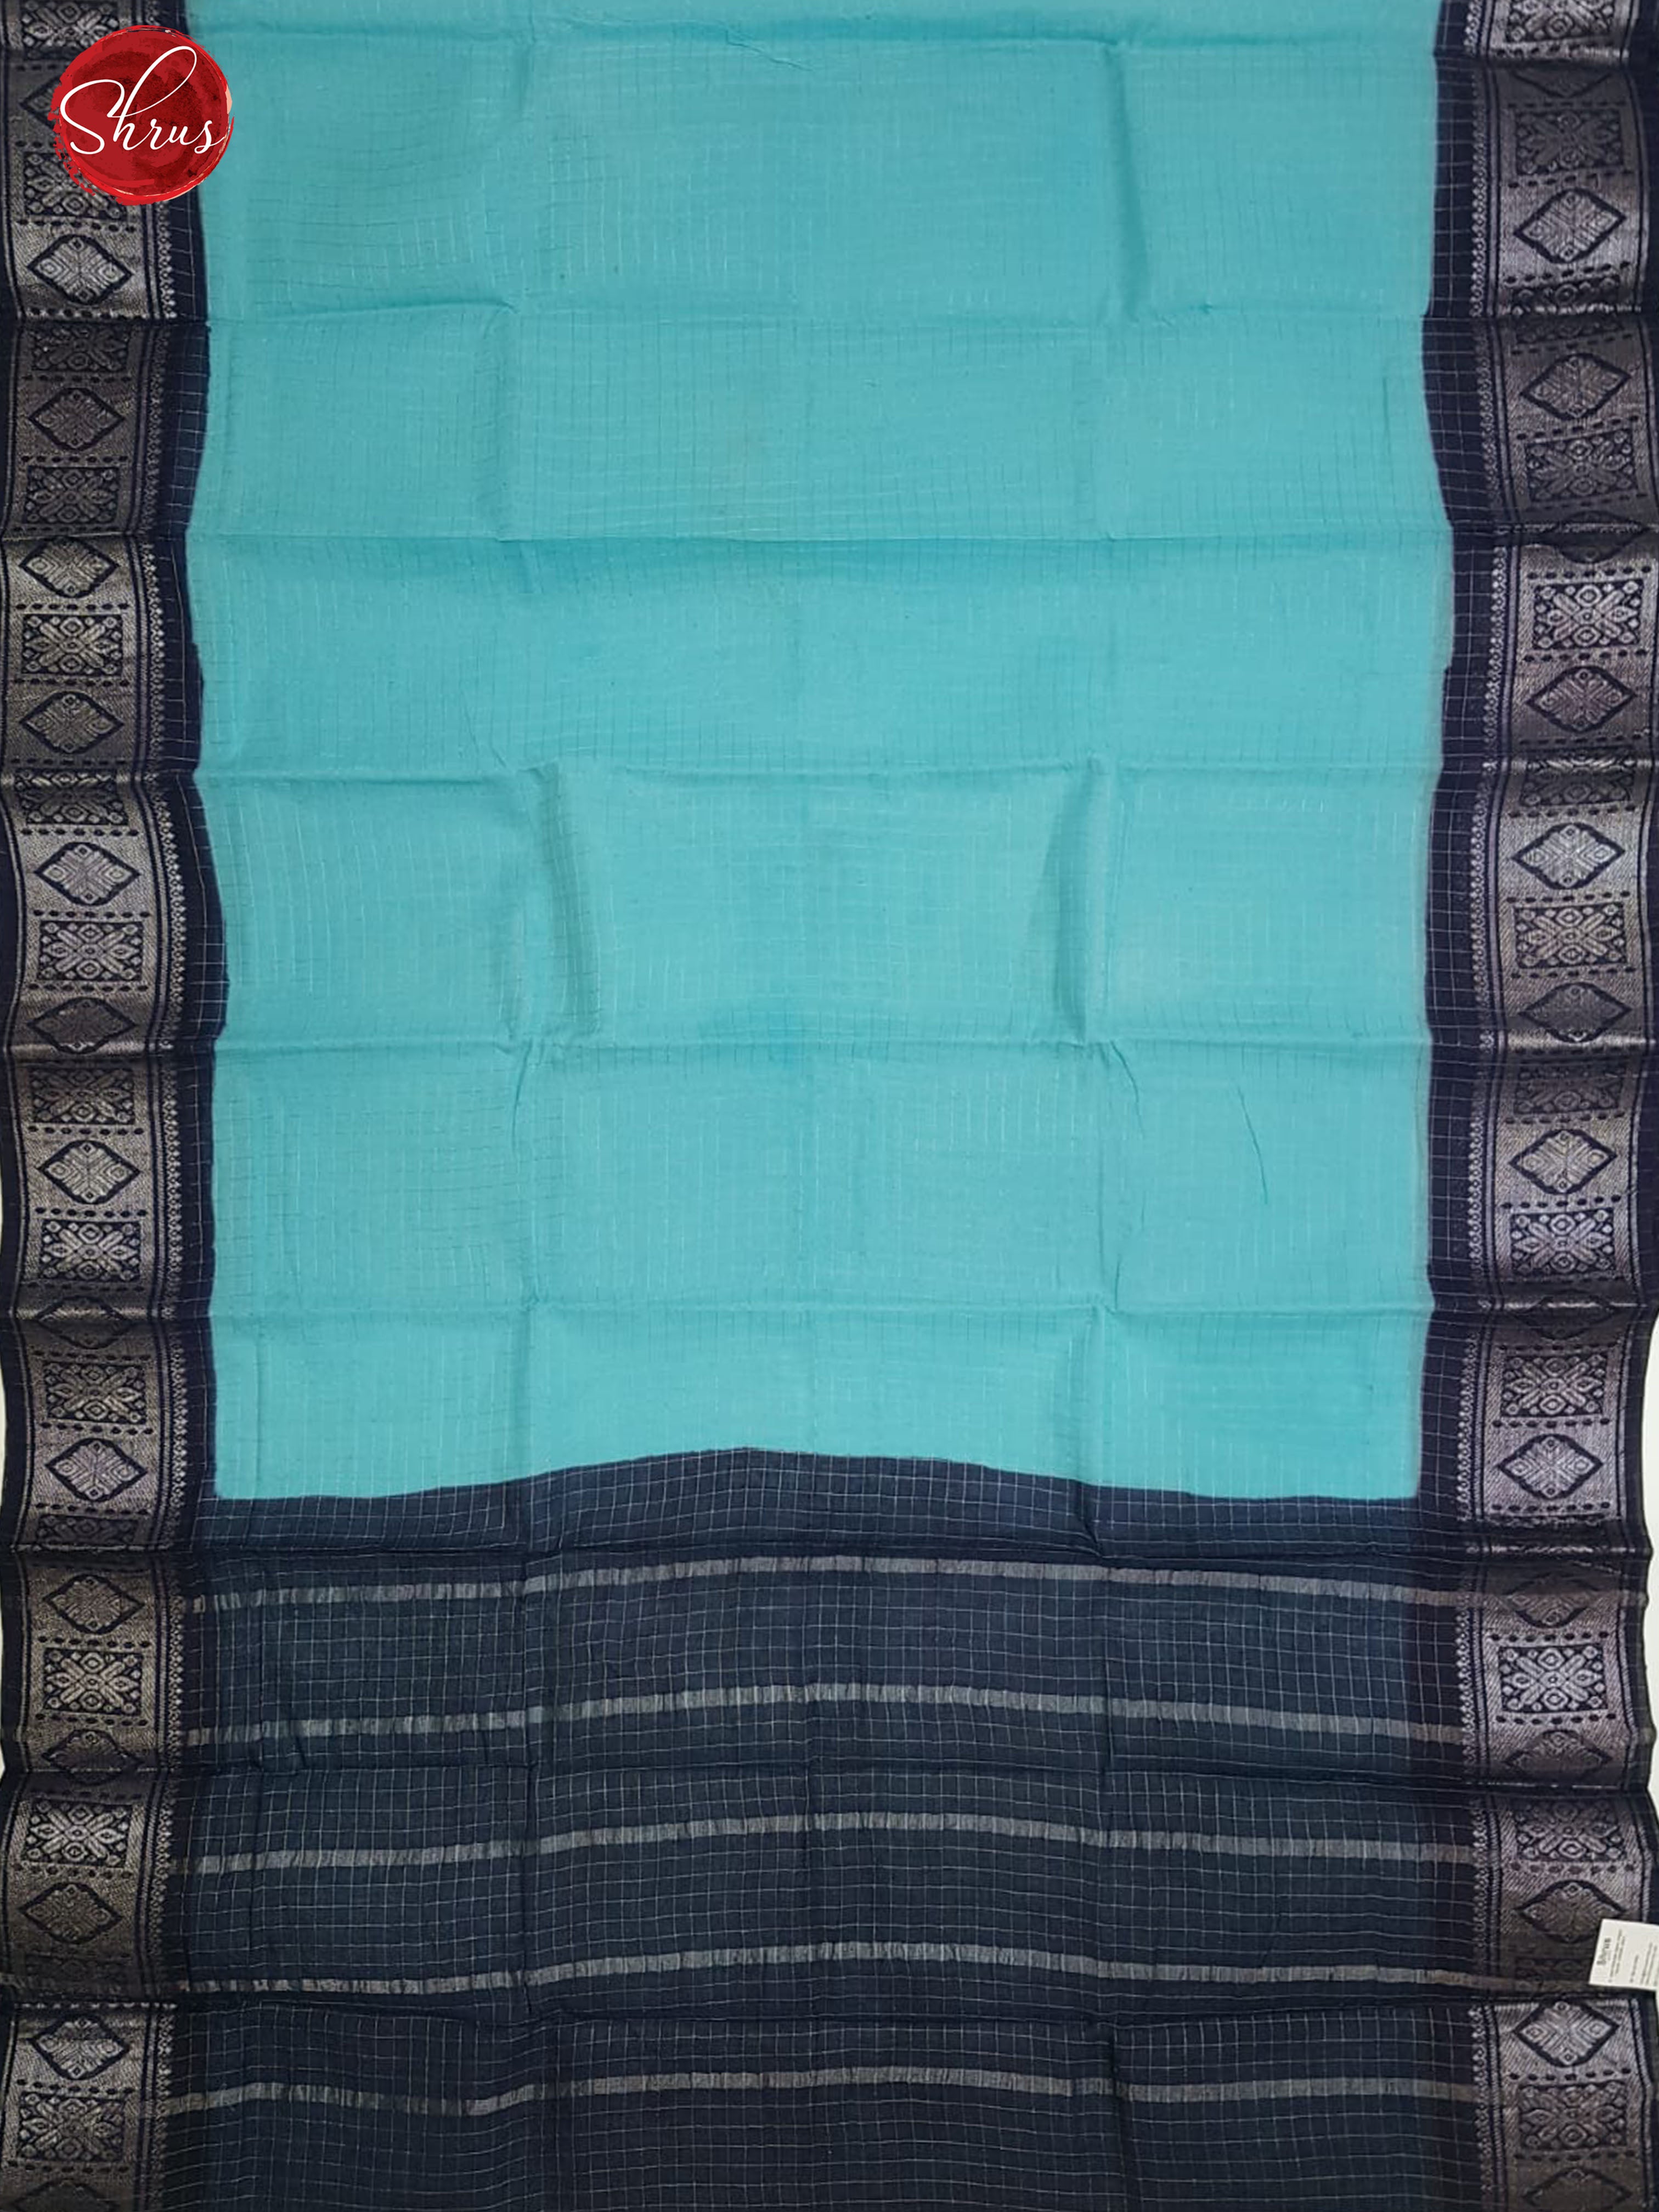 Sea Blue & Blue - Sungudi Cotton with zari Checks on the body& Contrast Zari Border - Shop on ShrusEternity.com